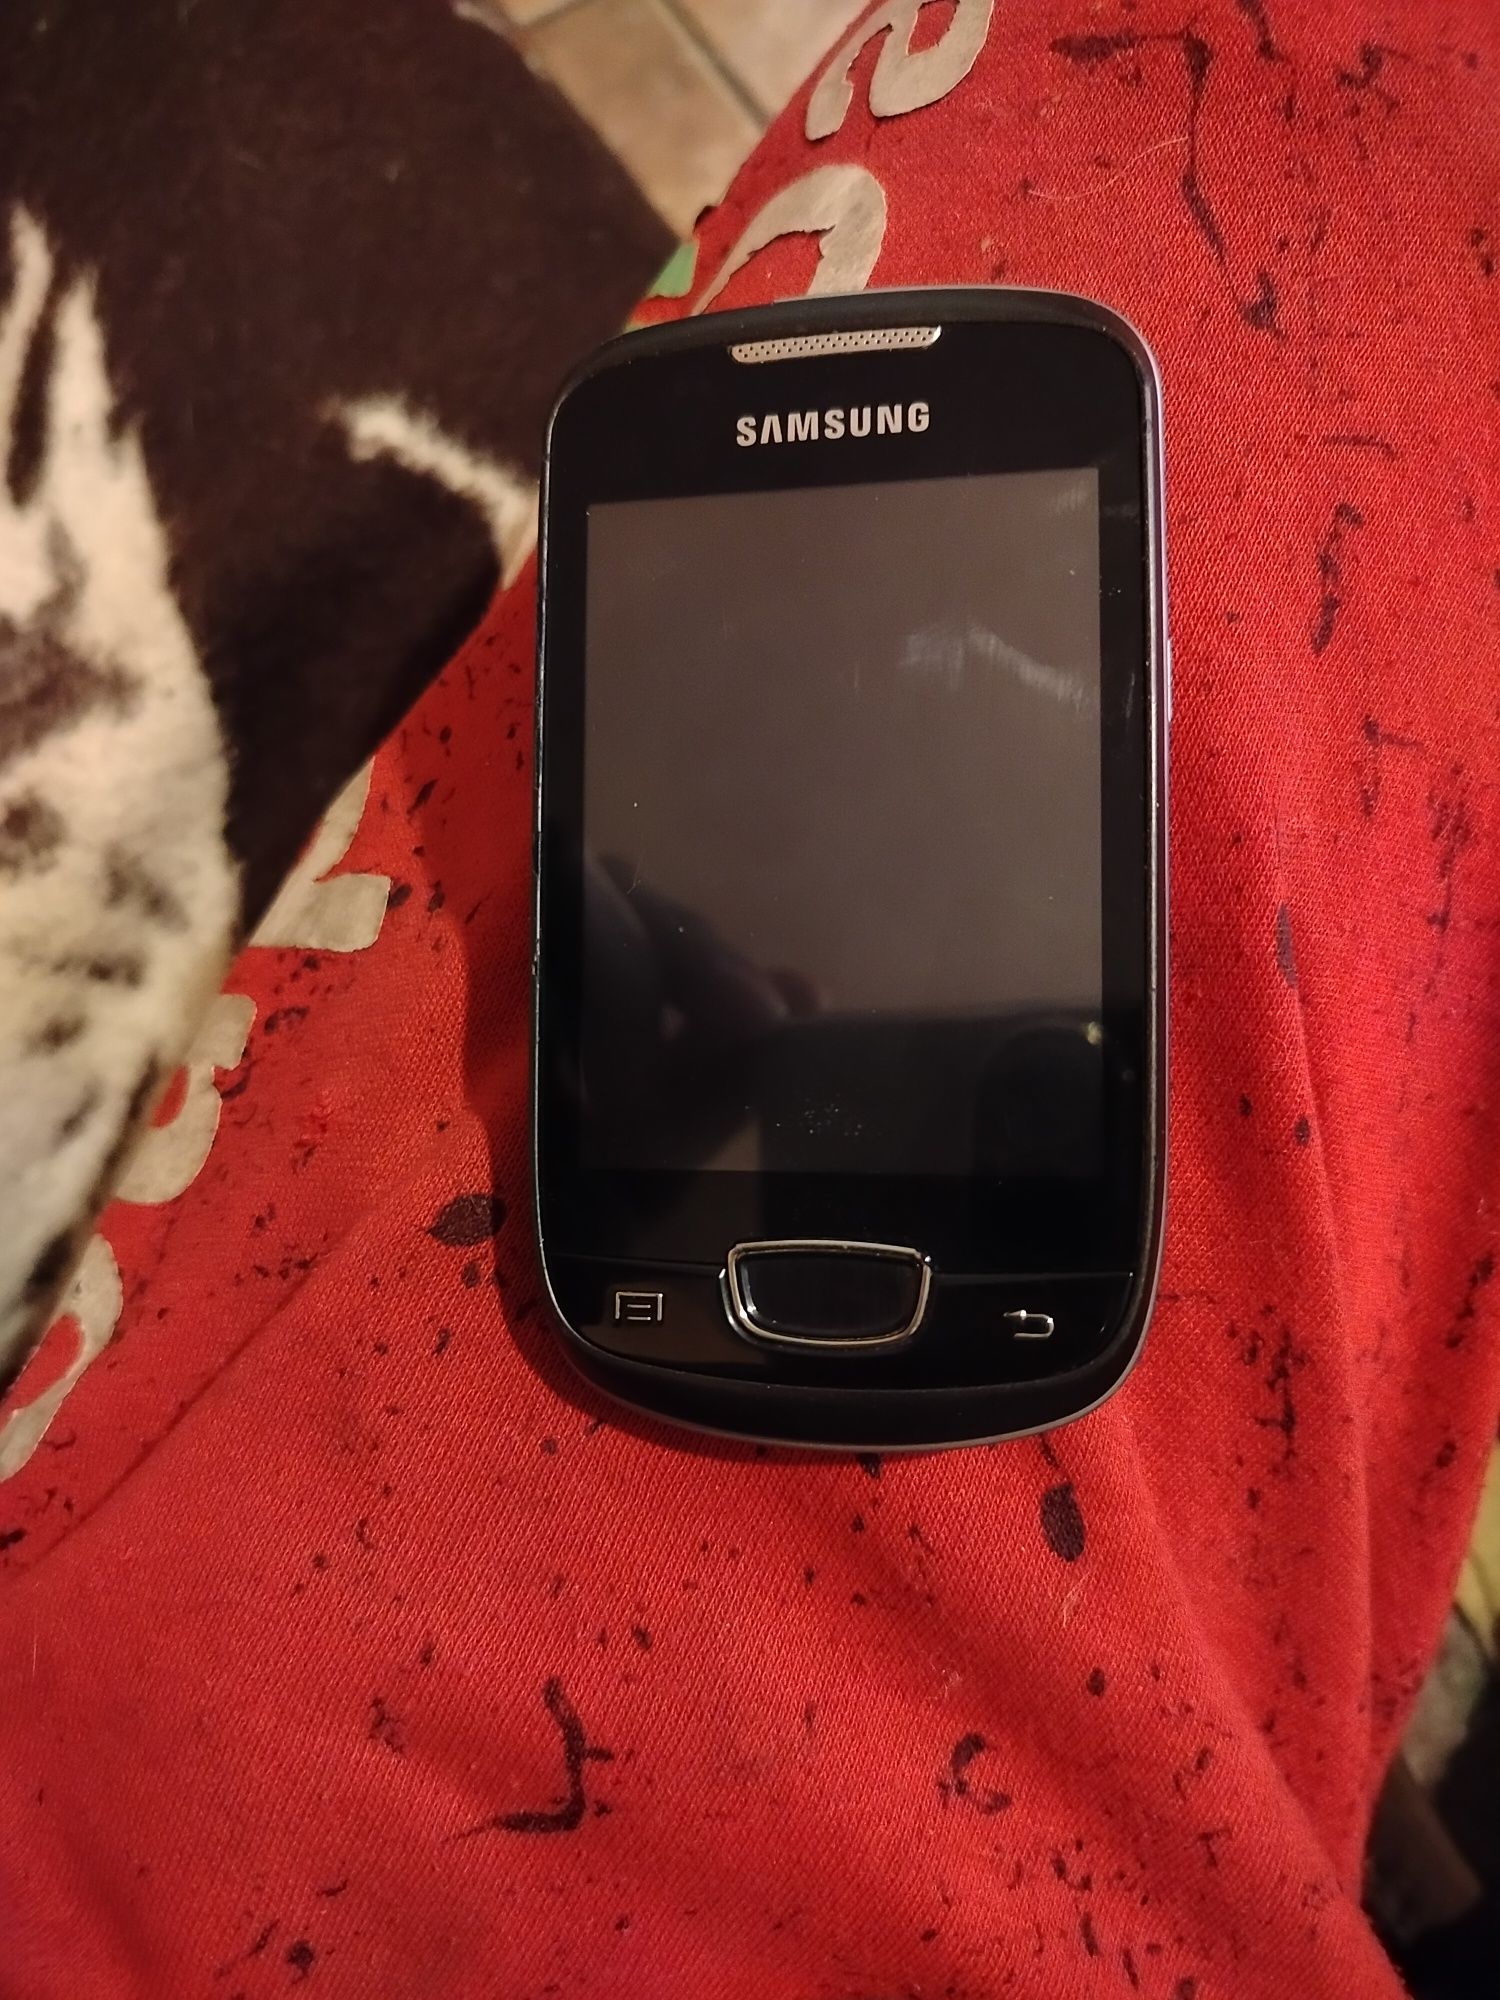 Telefon Samsung Galaxy mini gt-s5570